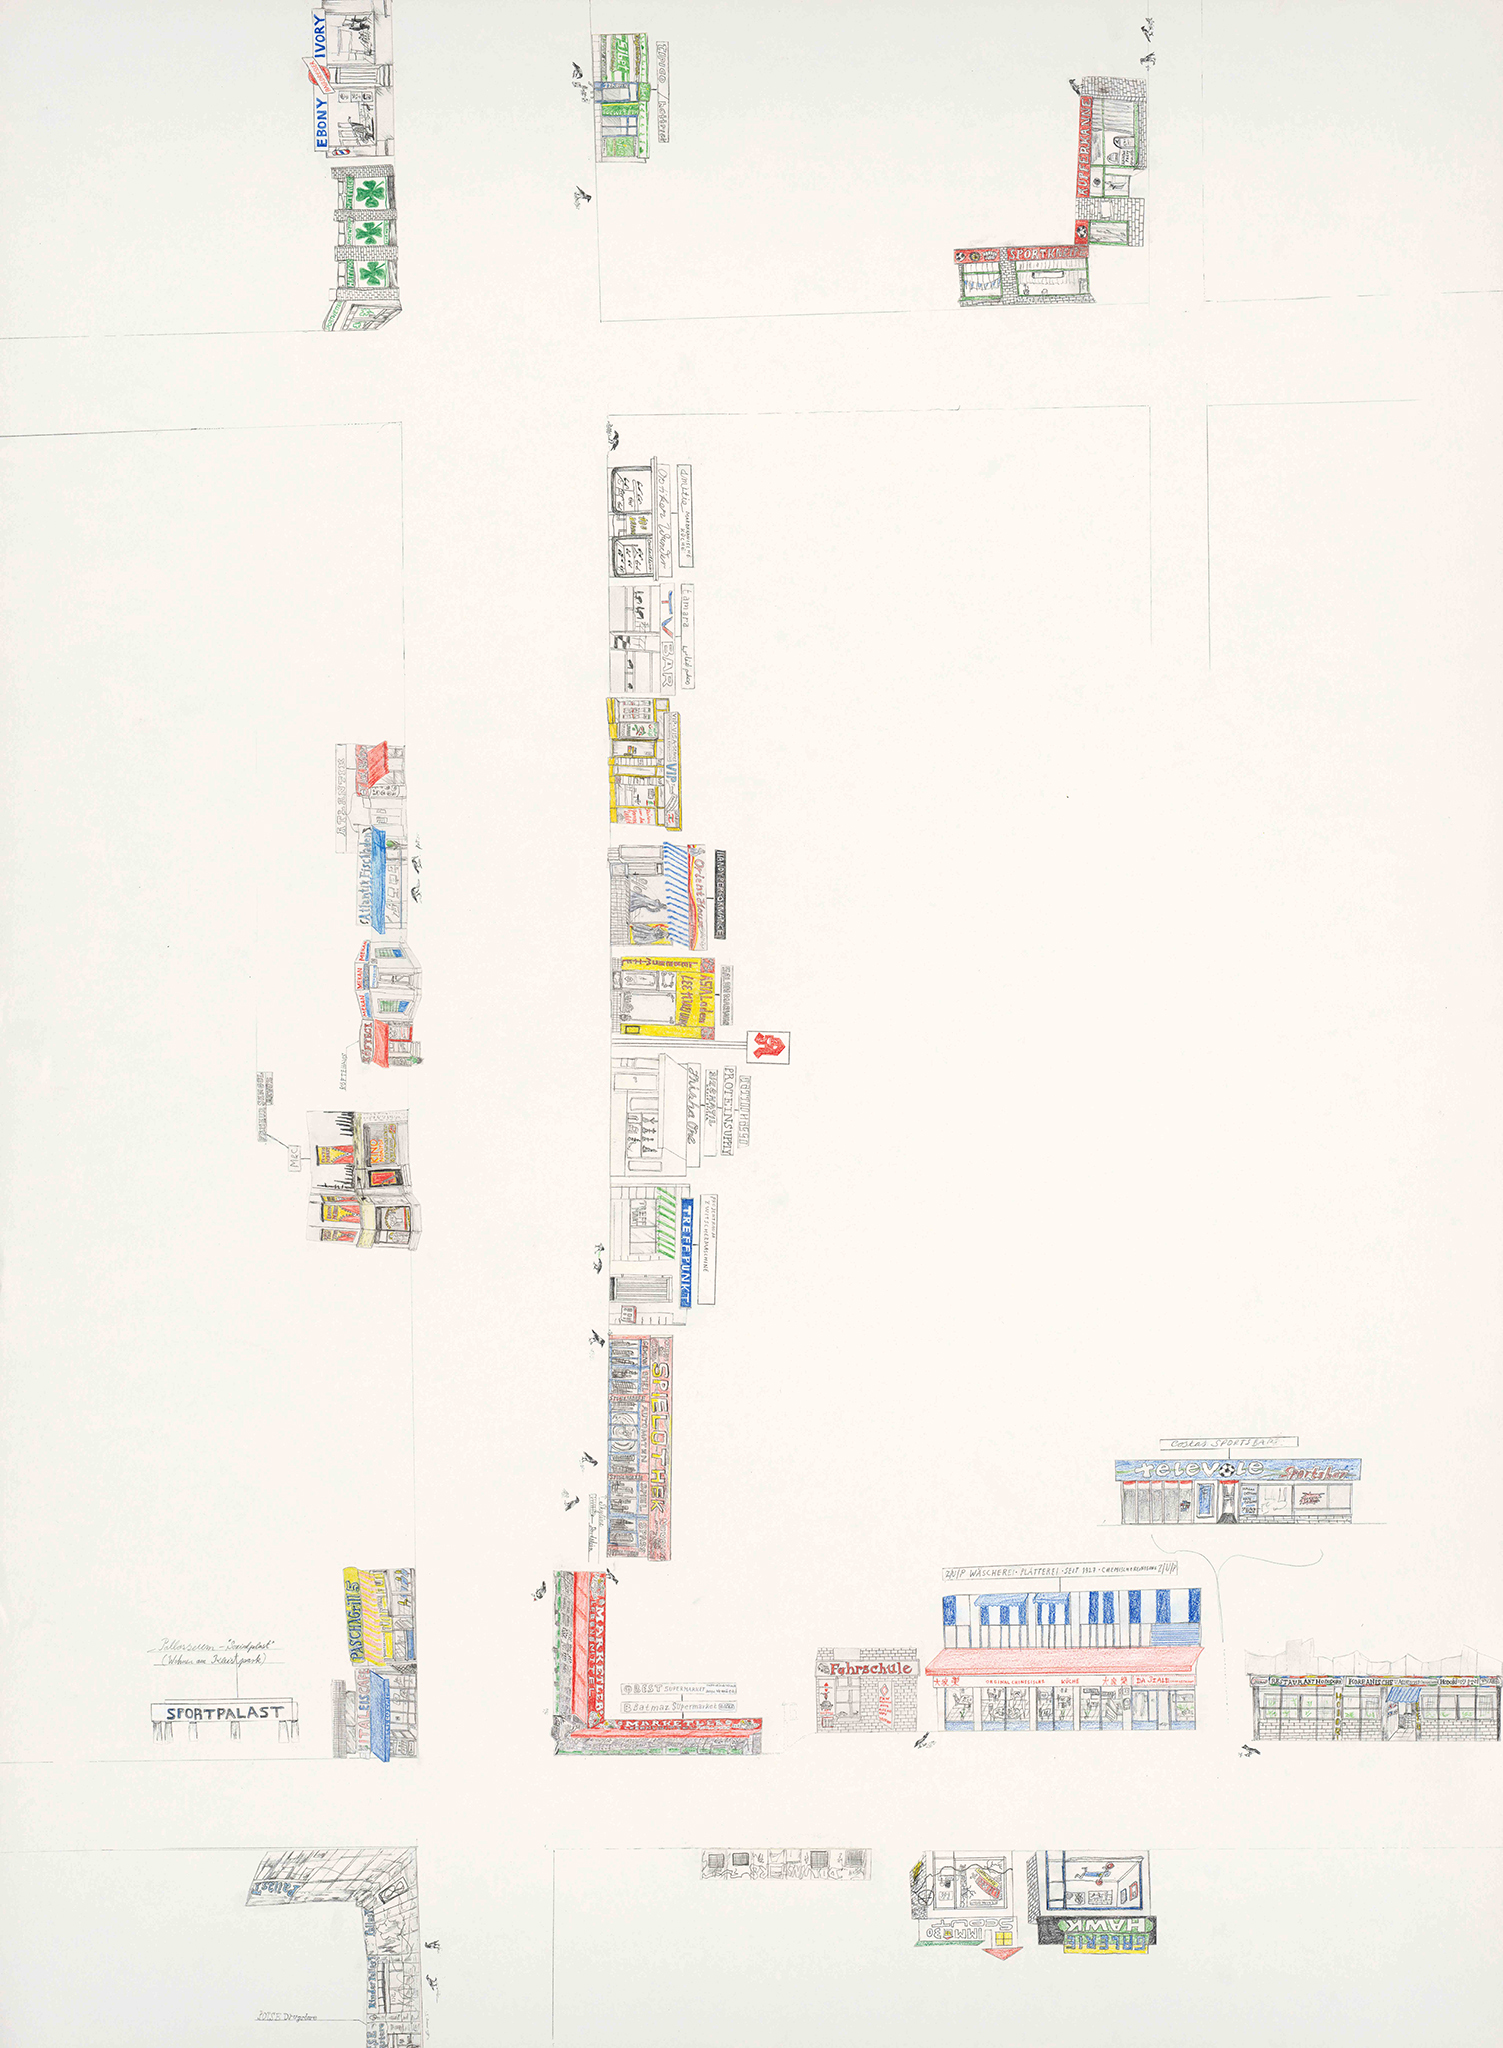 Kartographische Zeichnung 30 Teil2 (Potsdamerstr. , Winterfeldtstr./Alvenslebenstr., Pallasstr./Goebenstr,), Bleistift, Buntstift, Kleber auf Papier, 95 x 70cm